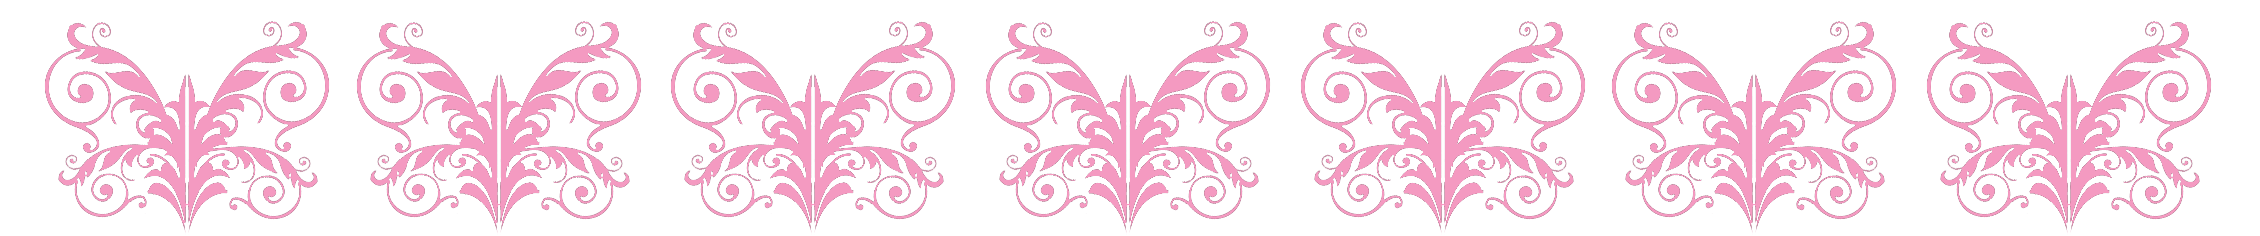 pink butterfly pattern